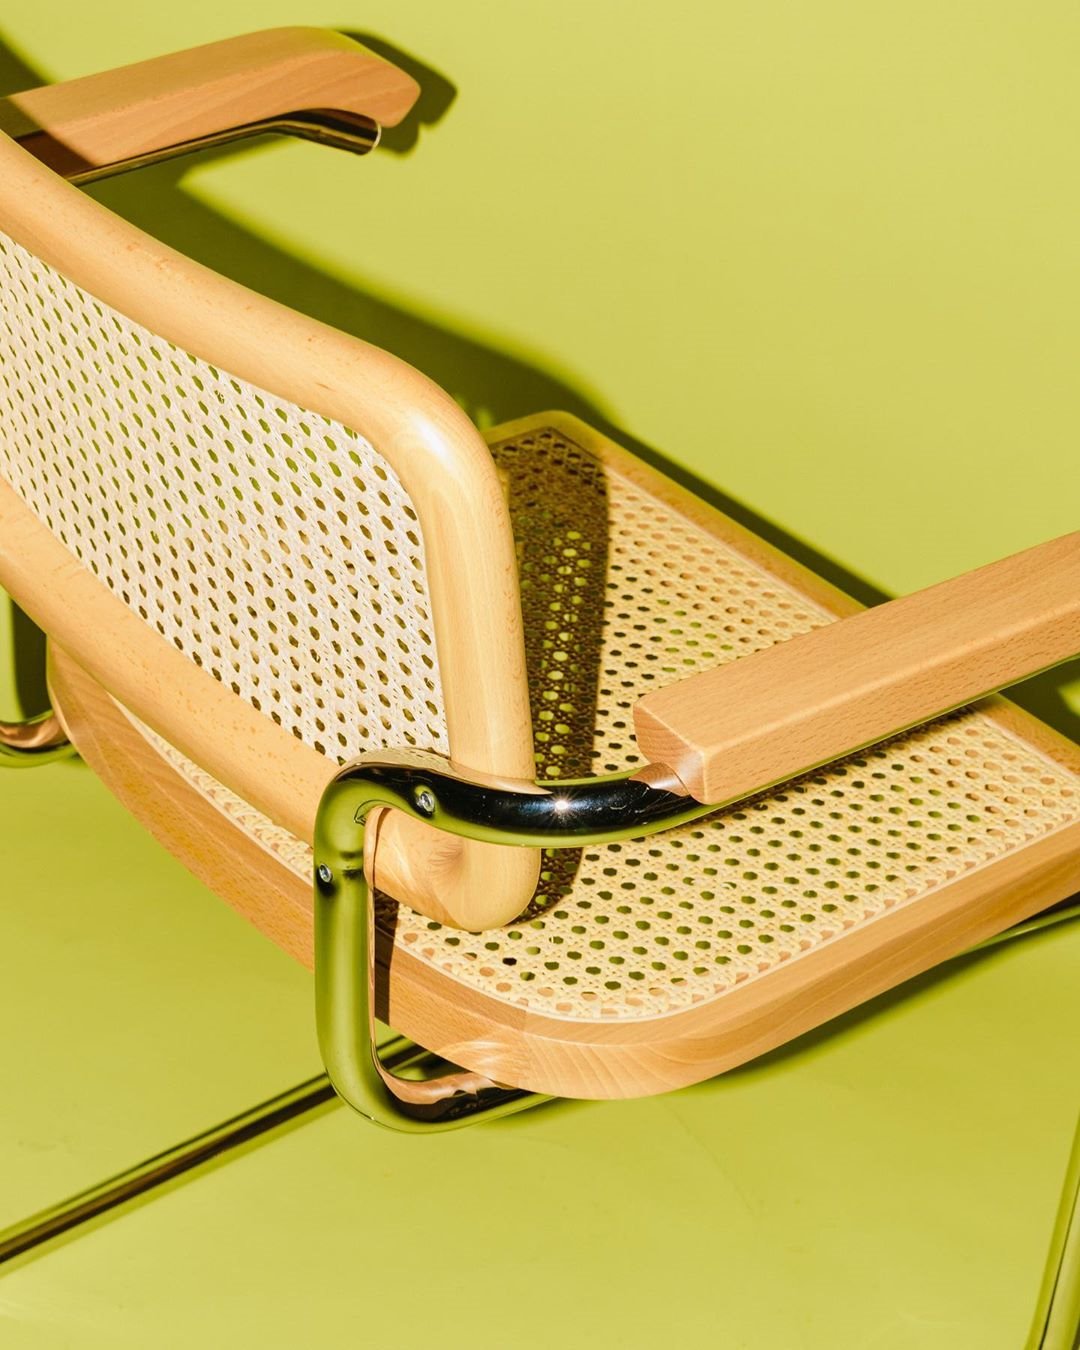 Detalle de una silla Cesca, creación de Mies Van Der Rohe.